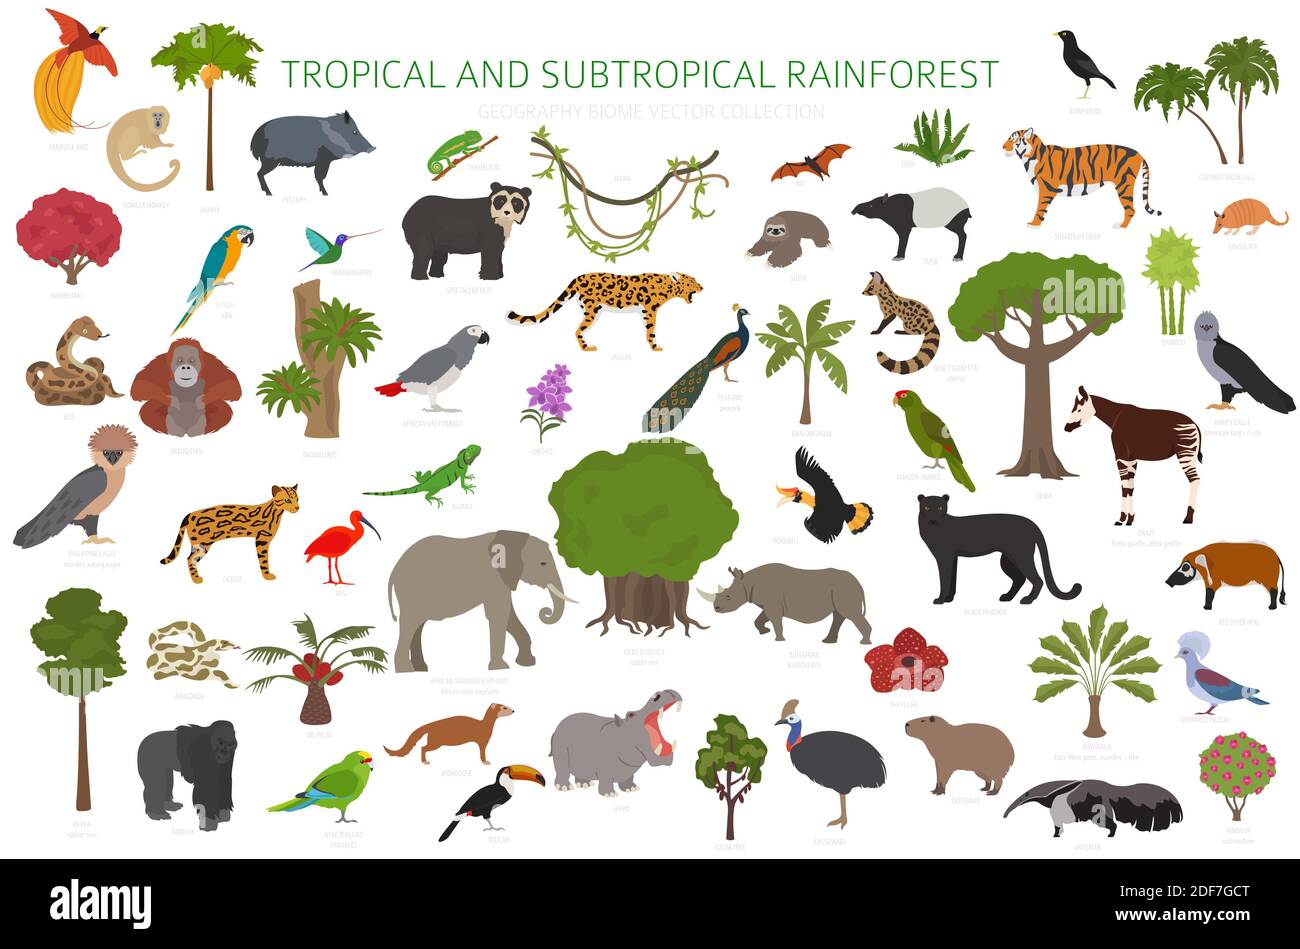 Tropicale e subtropicale foresta pluviale biome, regione naturale infografica. Foreste pluviali amazzoniche, africane, asiatiche, australiane. Animali, uccelli e vegetatio Illustrazione Vettoriale